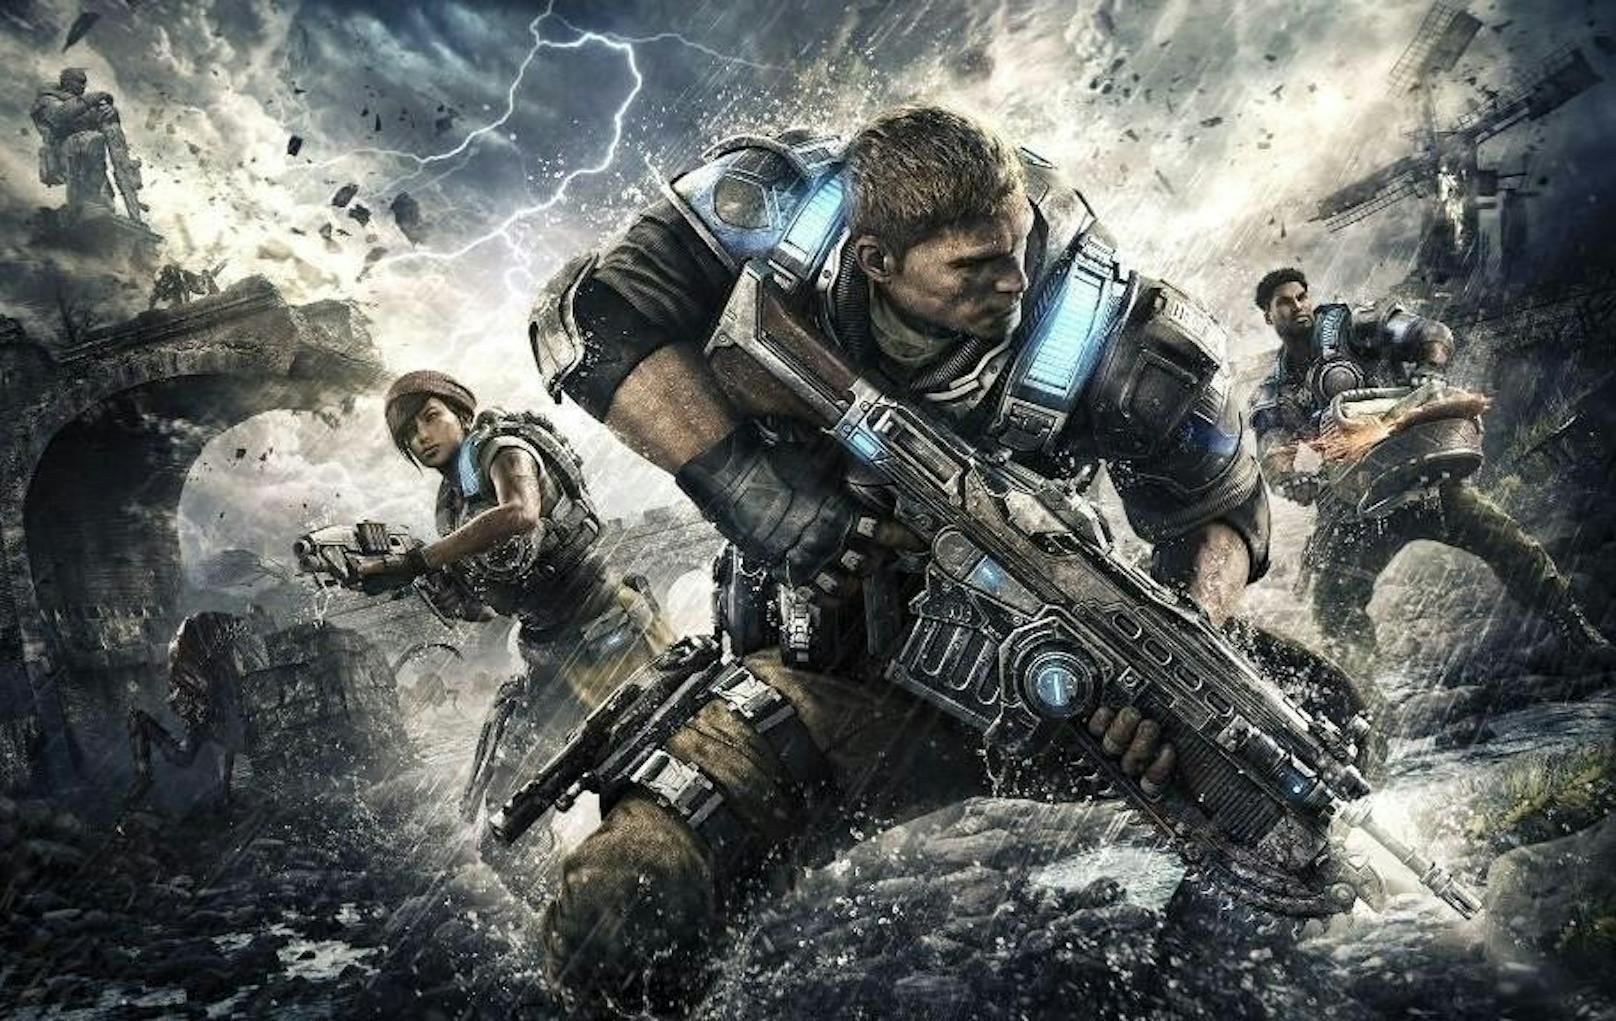 <b>2014:</b> Die Entwicklung des ersten "Gears of War" kostete Epic Games 12 Millionen Dollar. Mit den Verkäufen wurden 100 Millionen Dollar Umsatz generiert. Doch 2014 verkaufte man das Franchise an Microsoft. CEO Tim Sweeney begründete den Schritt damit, dass der vierte Titel der Serie zu viel Geld verschlungen hätte.